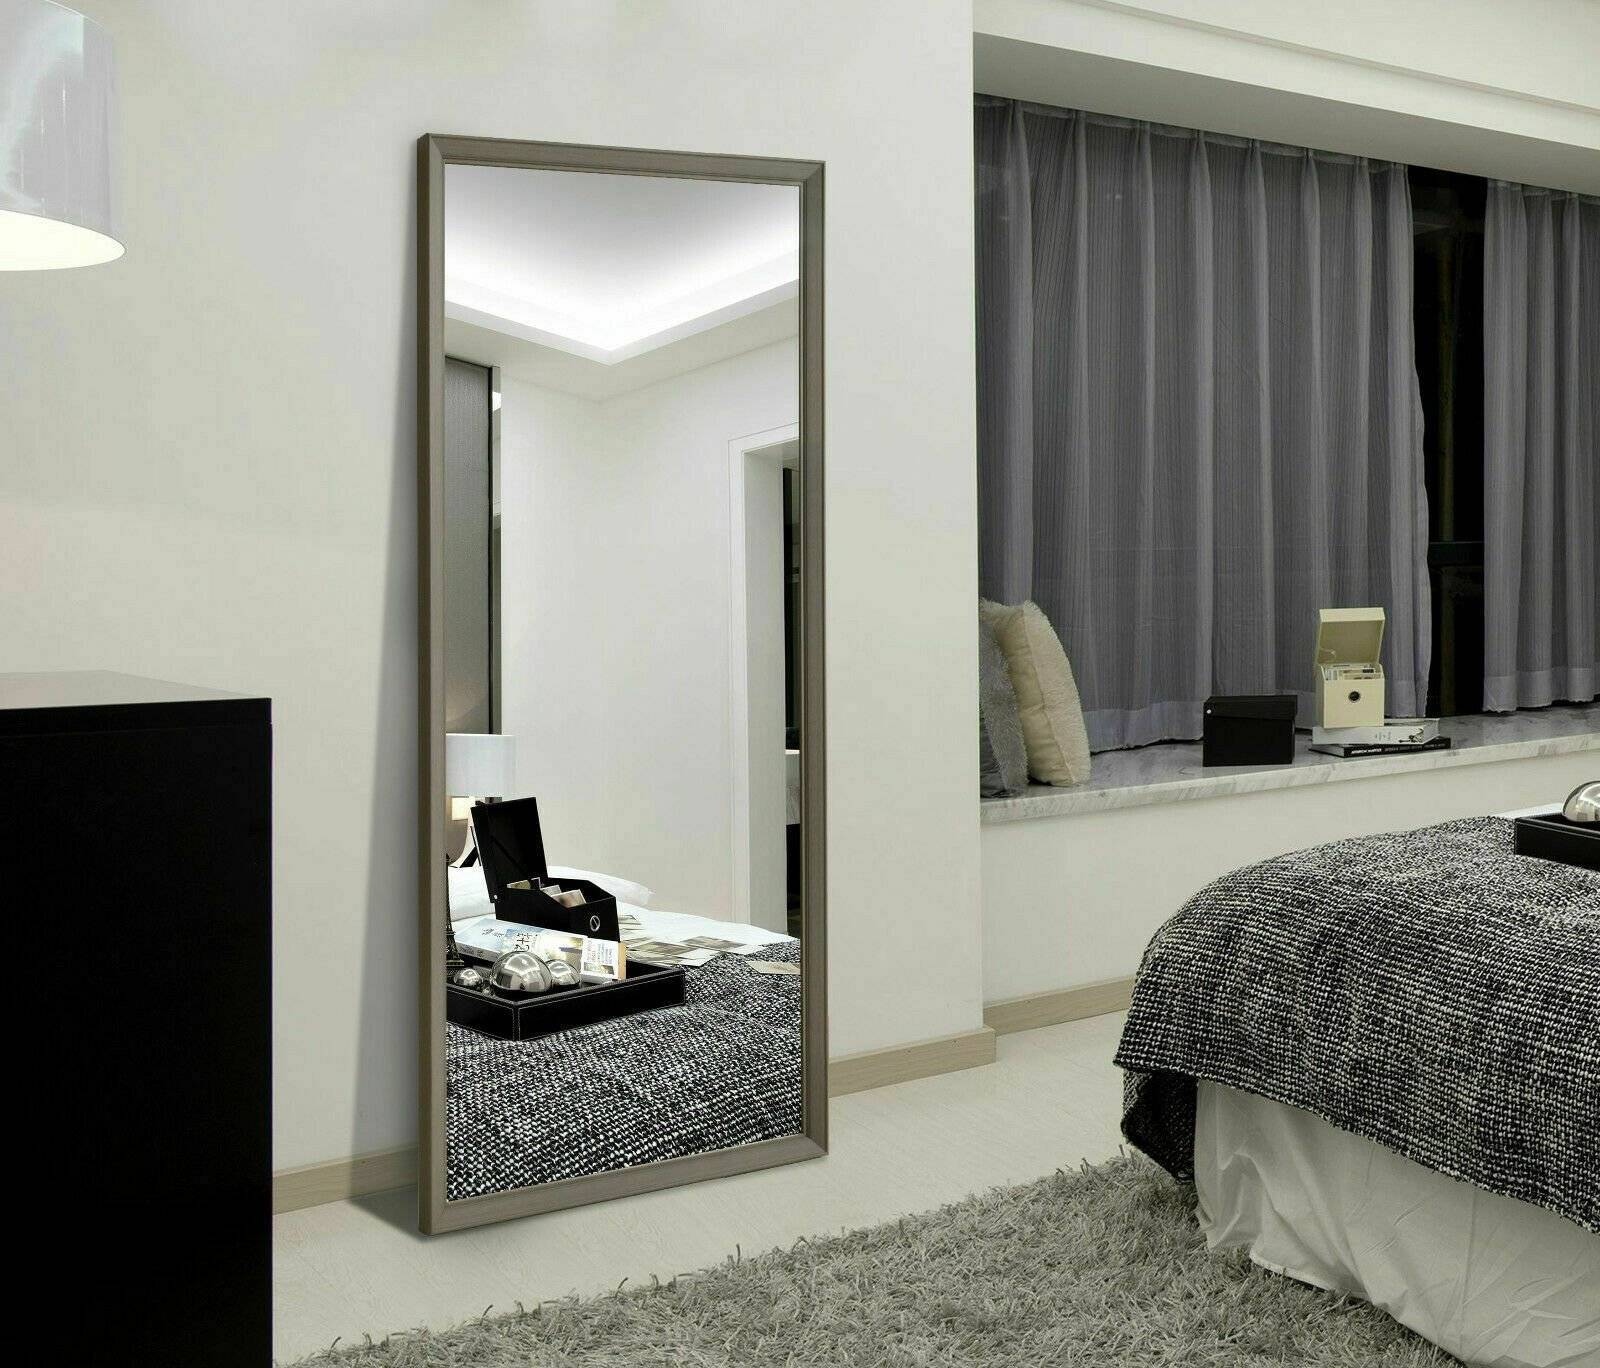 Зеркало в спальне напротив кровати: приметы и критерии выбора